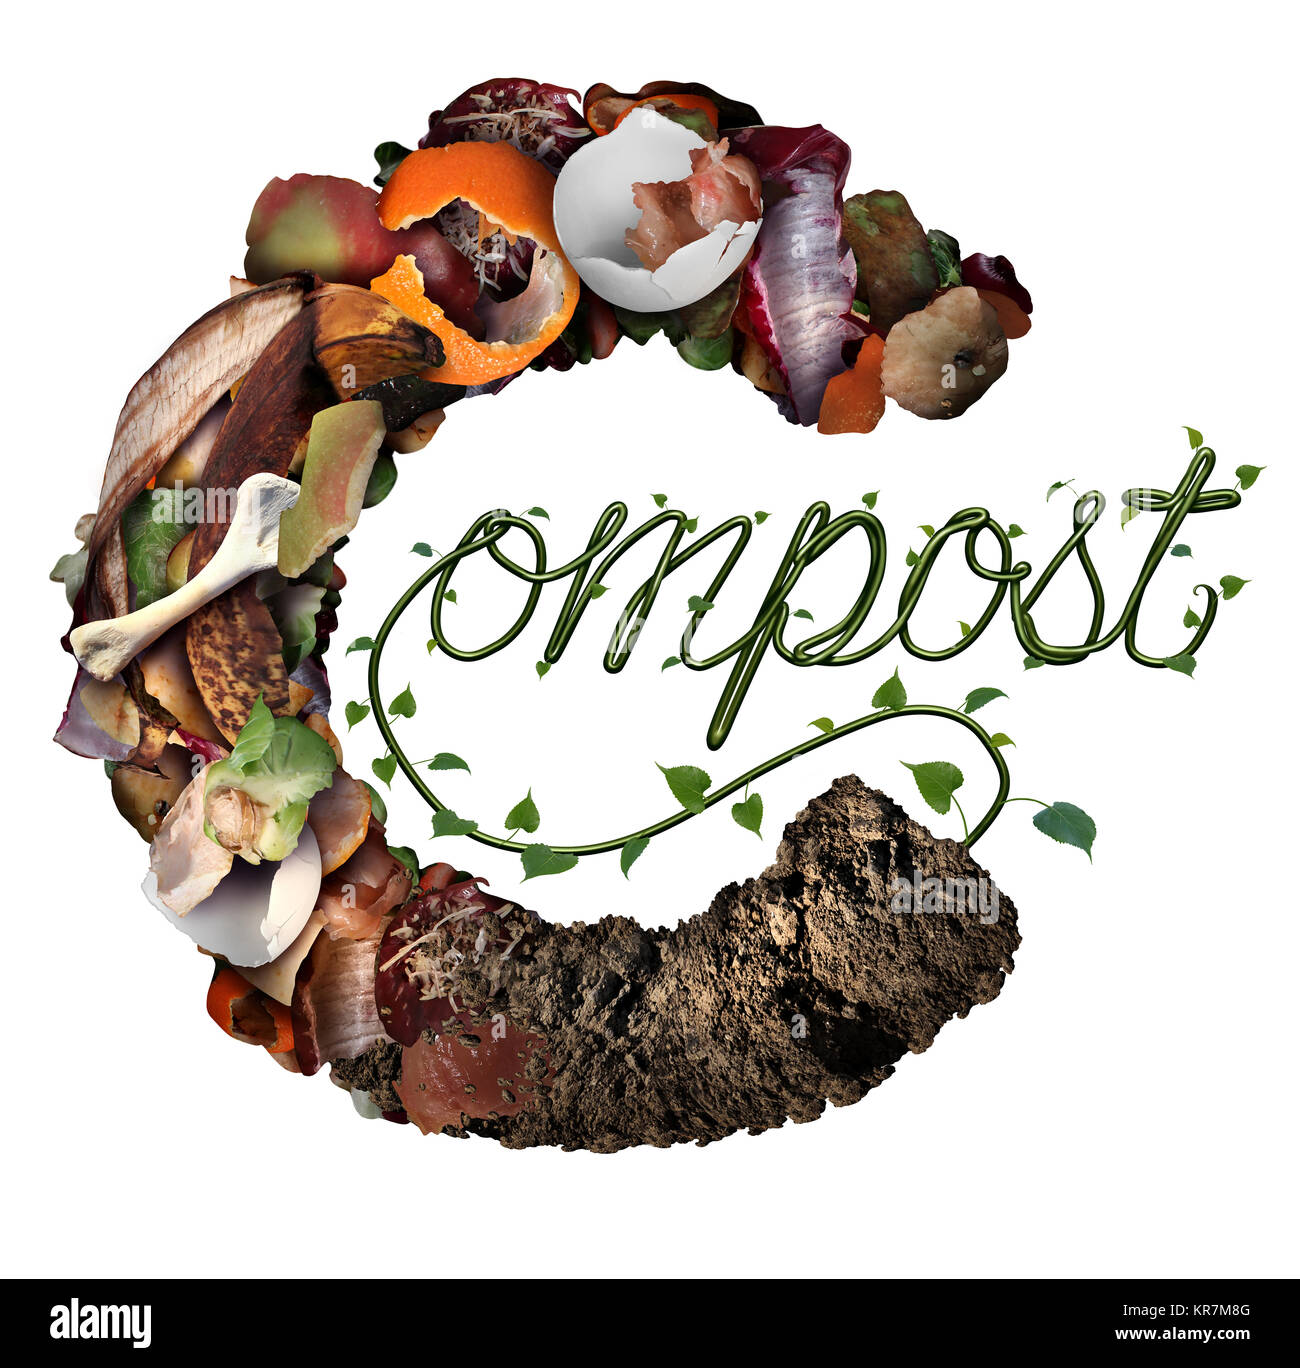 Kompost und Kompostierung symbol Lebenszyklus und eine organische Recycling System als ein Haufen verwesenden Essensresten mit ein Bäumchen wächst. Stockfoto